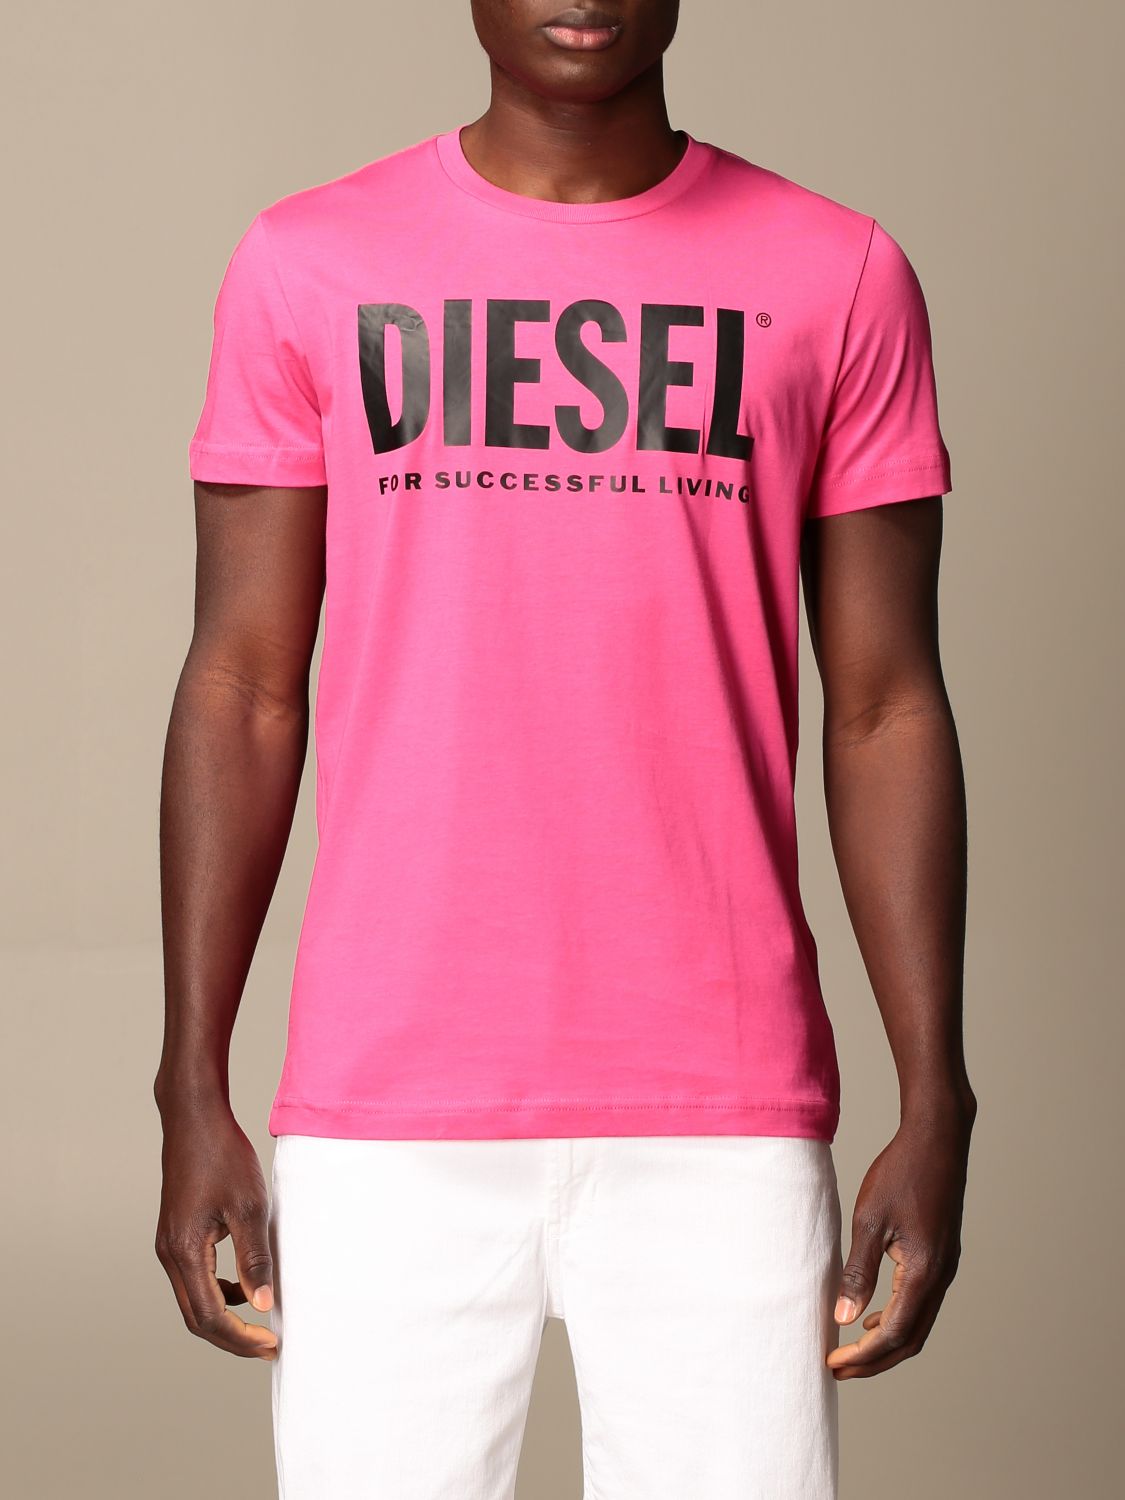 ディーゼル(DIESEL): Tシャツ メンズ - ピンク | Tシャツ ディーゼル 00SXED 0AAXJ GIGLIO.COM